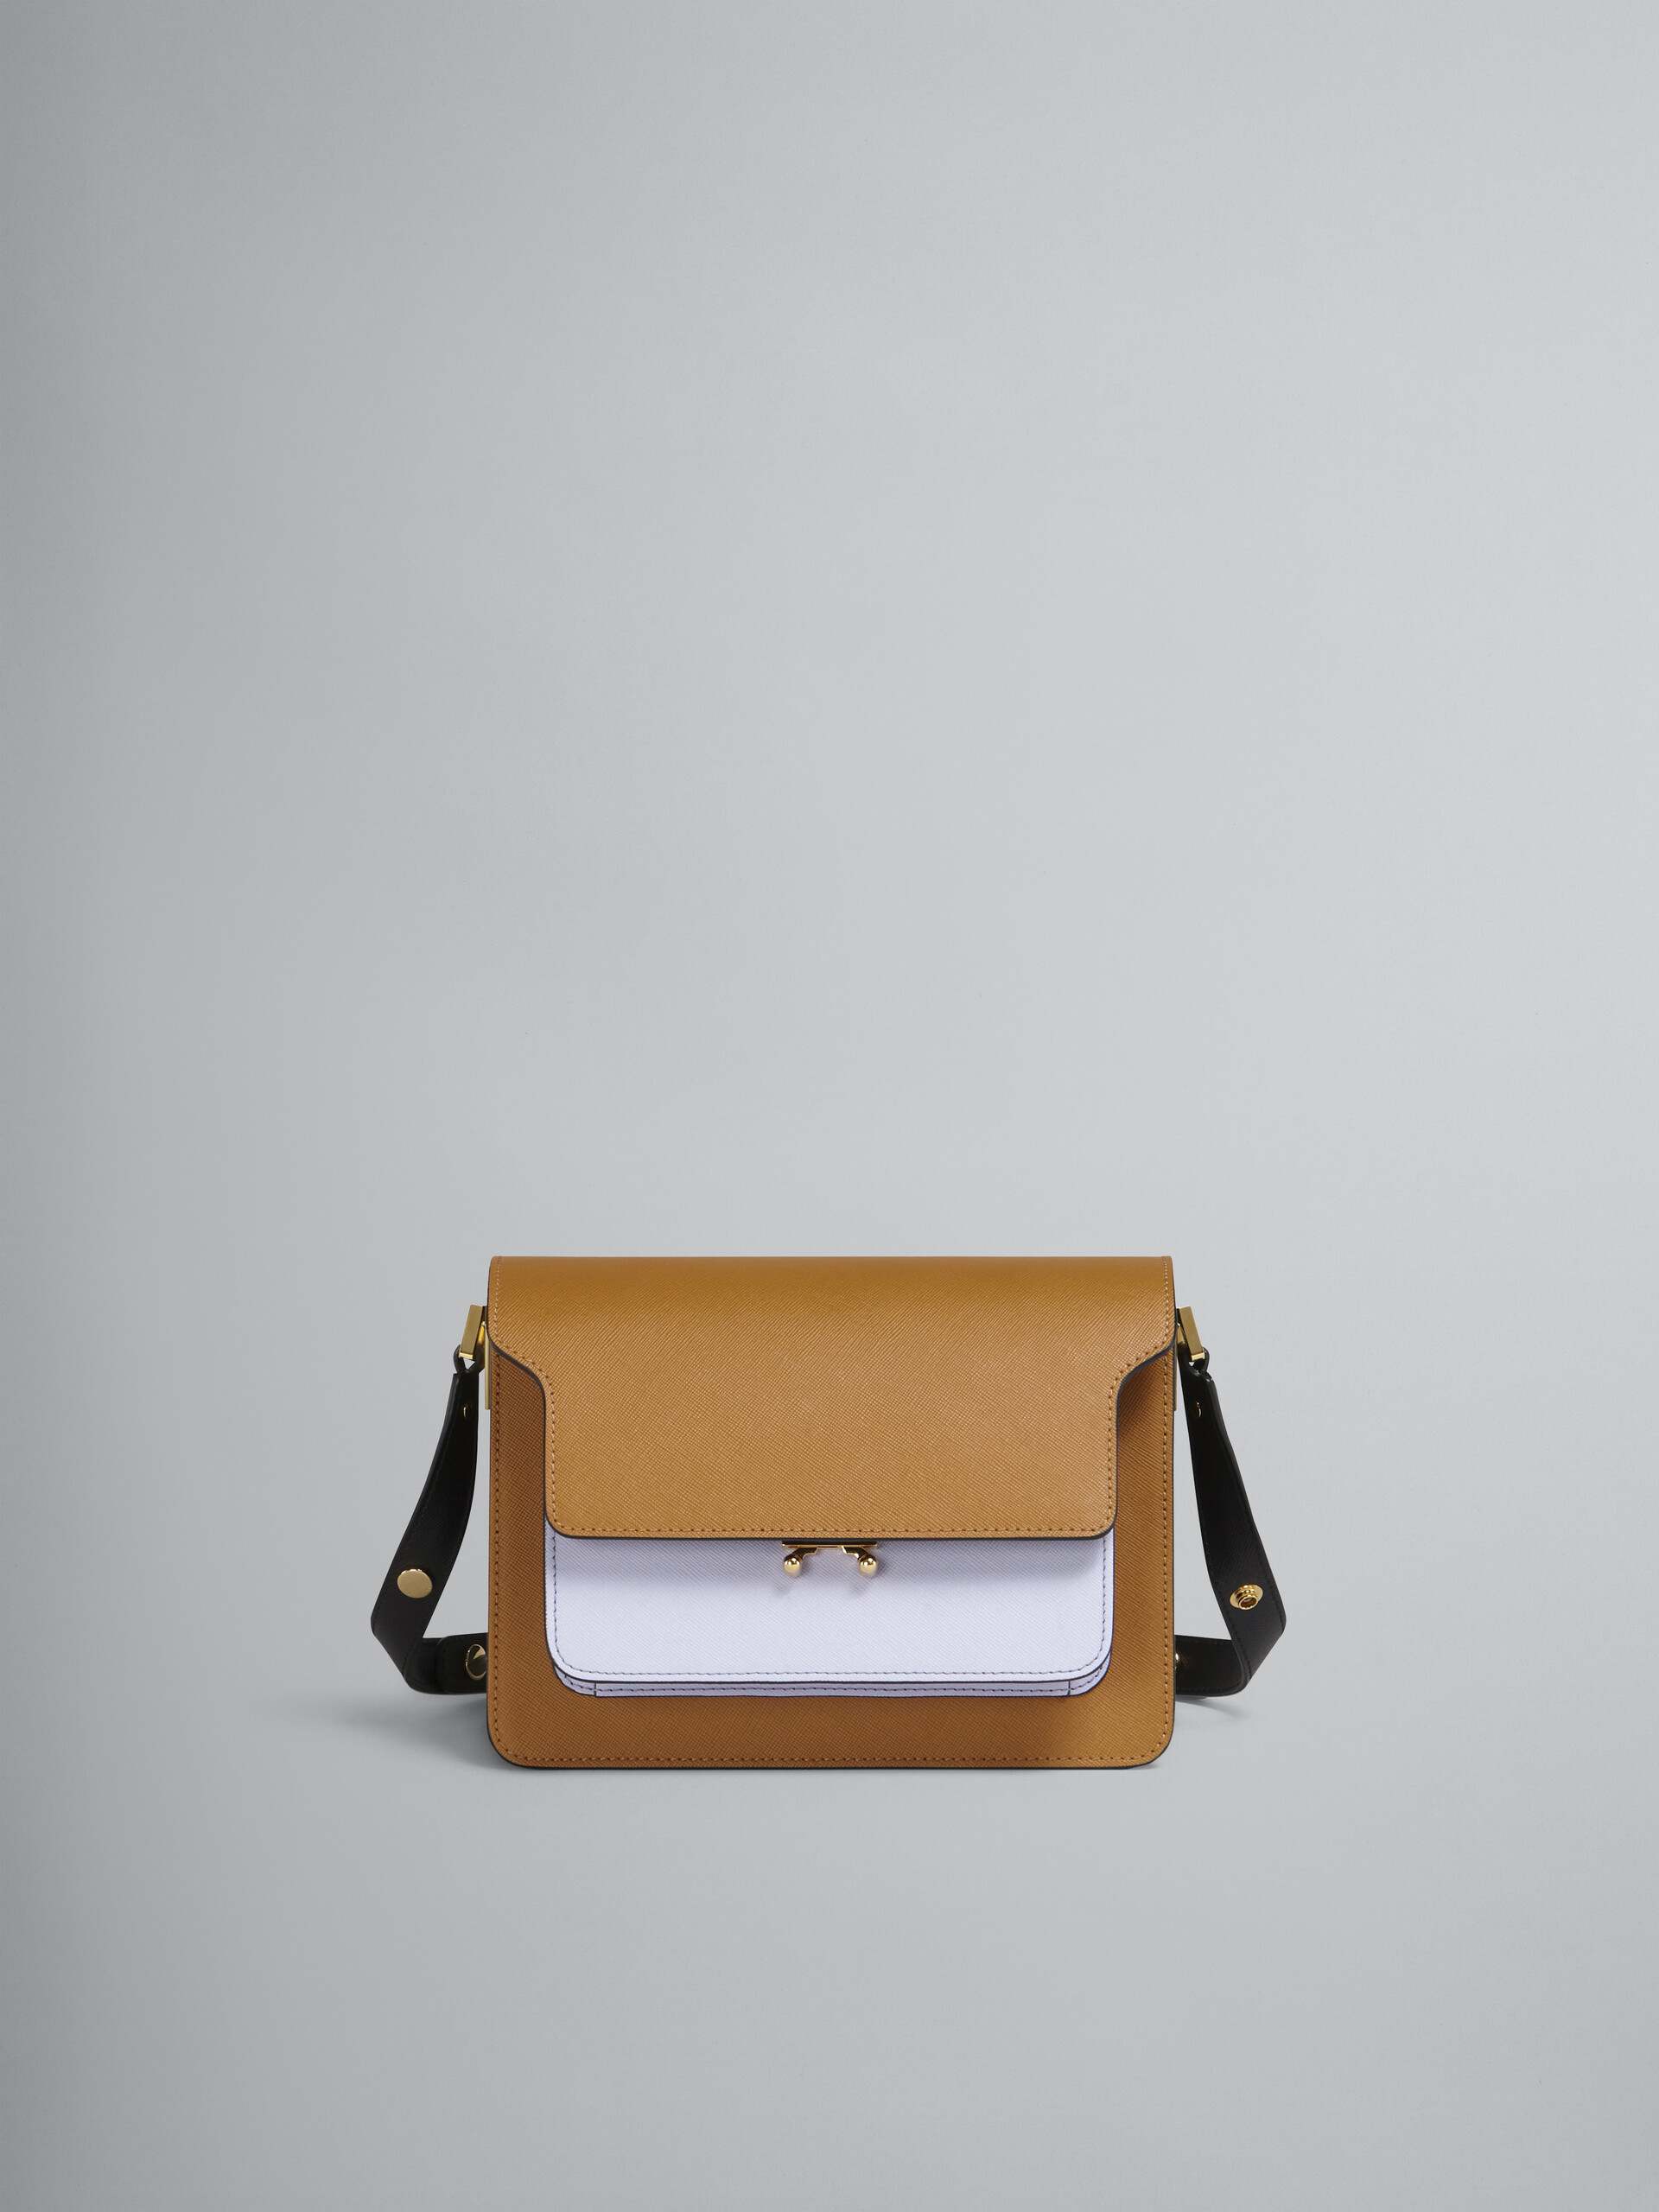 TRUNK bag in saffiano marrone lilla e nero - Borse a spalla - Image 1